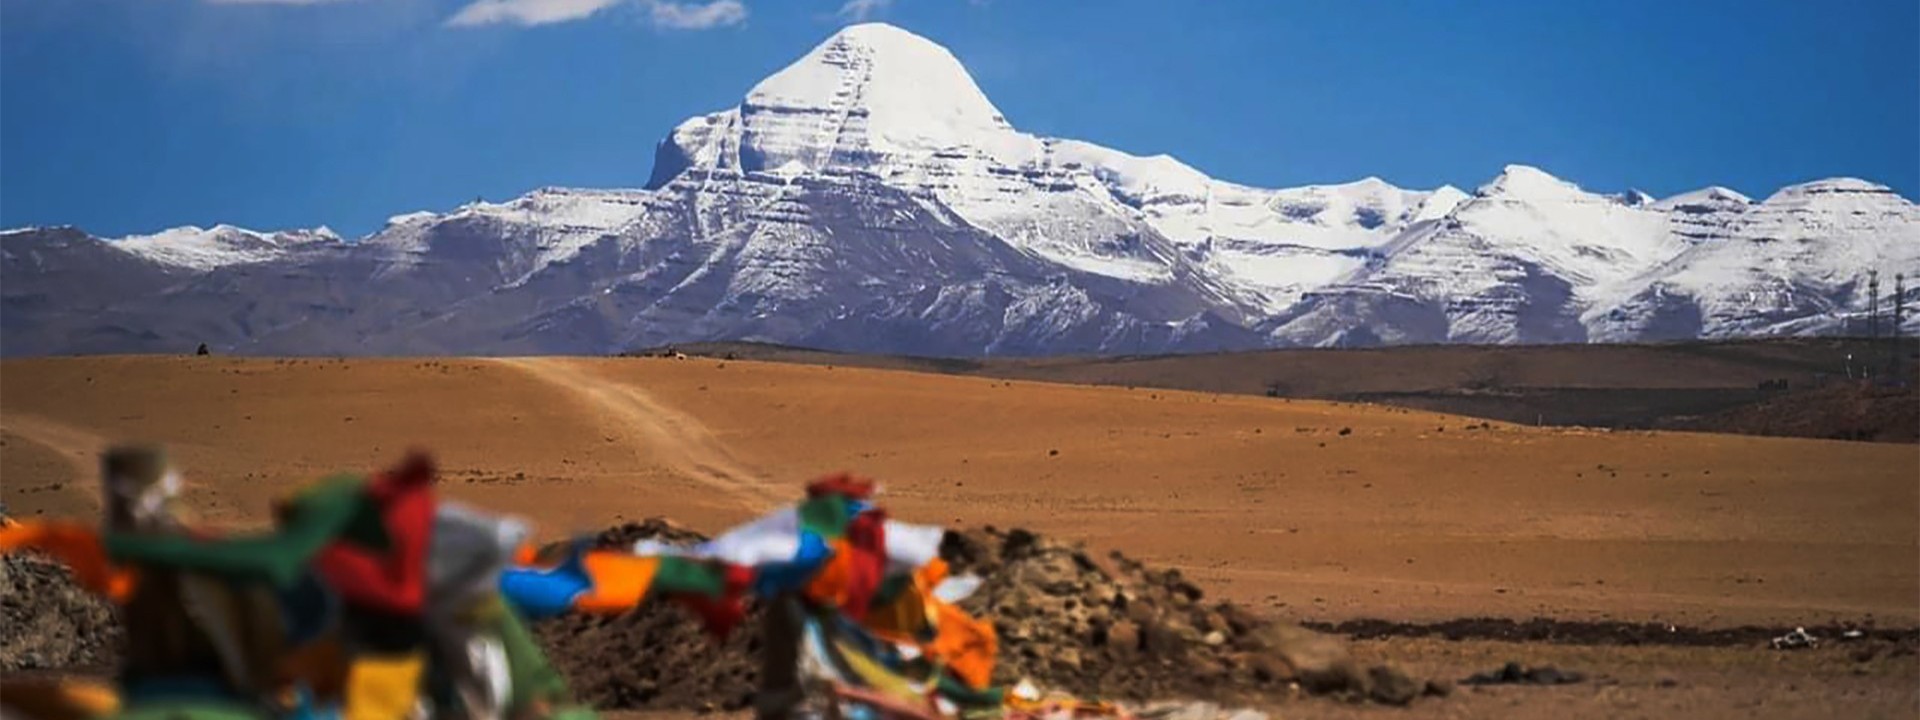 Mount Kailash and Lake Manasarovar Yatra : Makalu Adventure